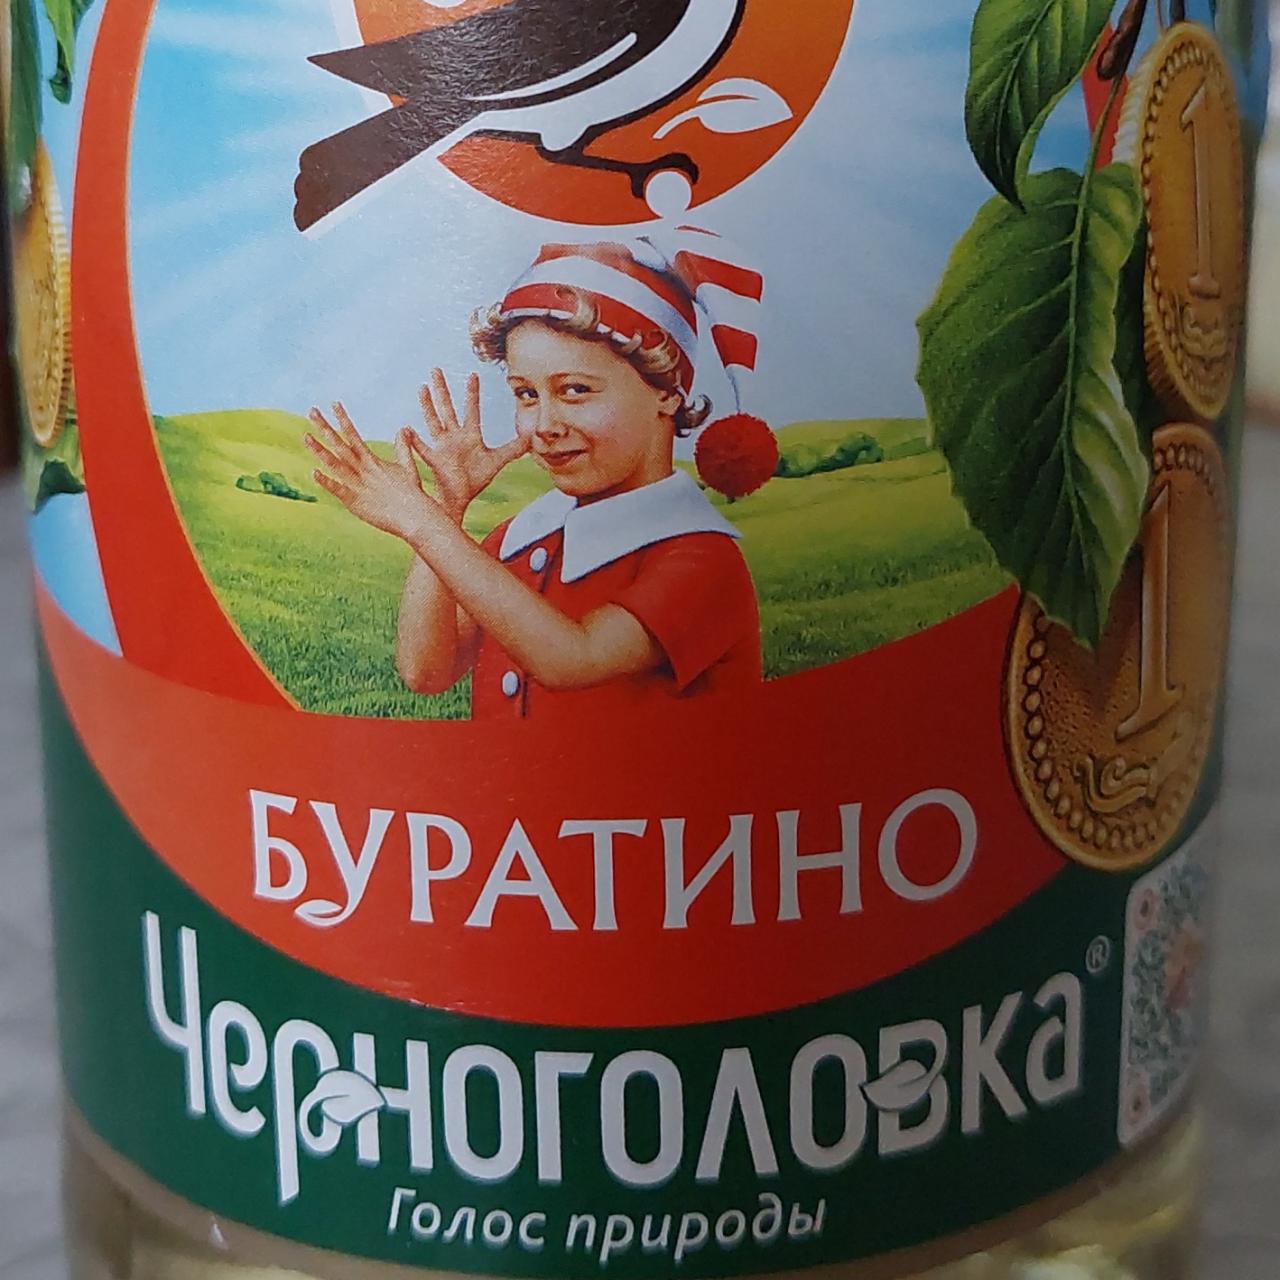 Фото - Газированный напиток буратино Черноголовка